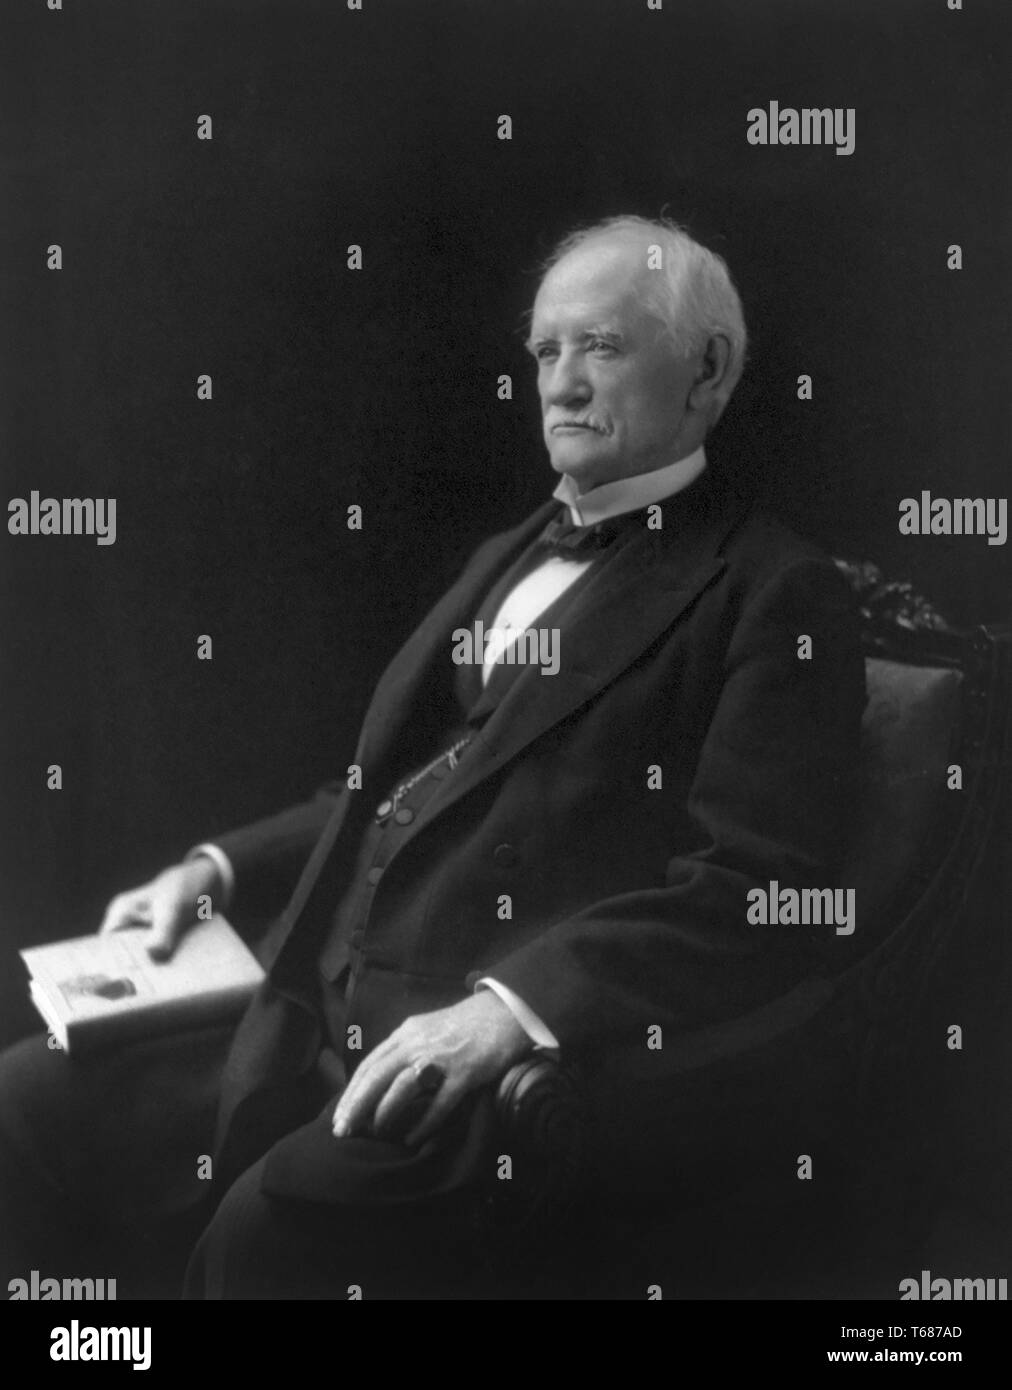 John Tyler Morgan (1824-1907), General der Konföderierten Staaten Armee während des amerikanischen Bürgerkriegs und Senator aus Alabama, die war ein Befürworter der Jim-crow-Gesetze, und rassische Segration, sitzt, Porträt, 1901 Stockfoto